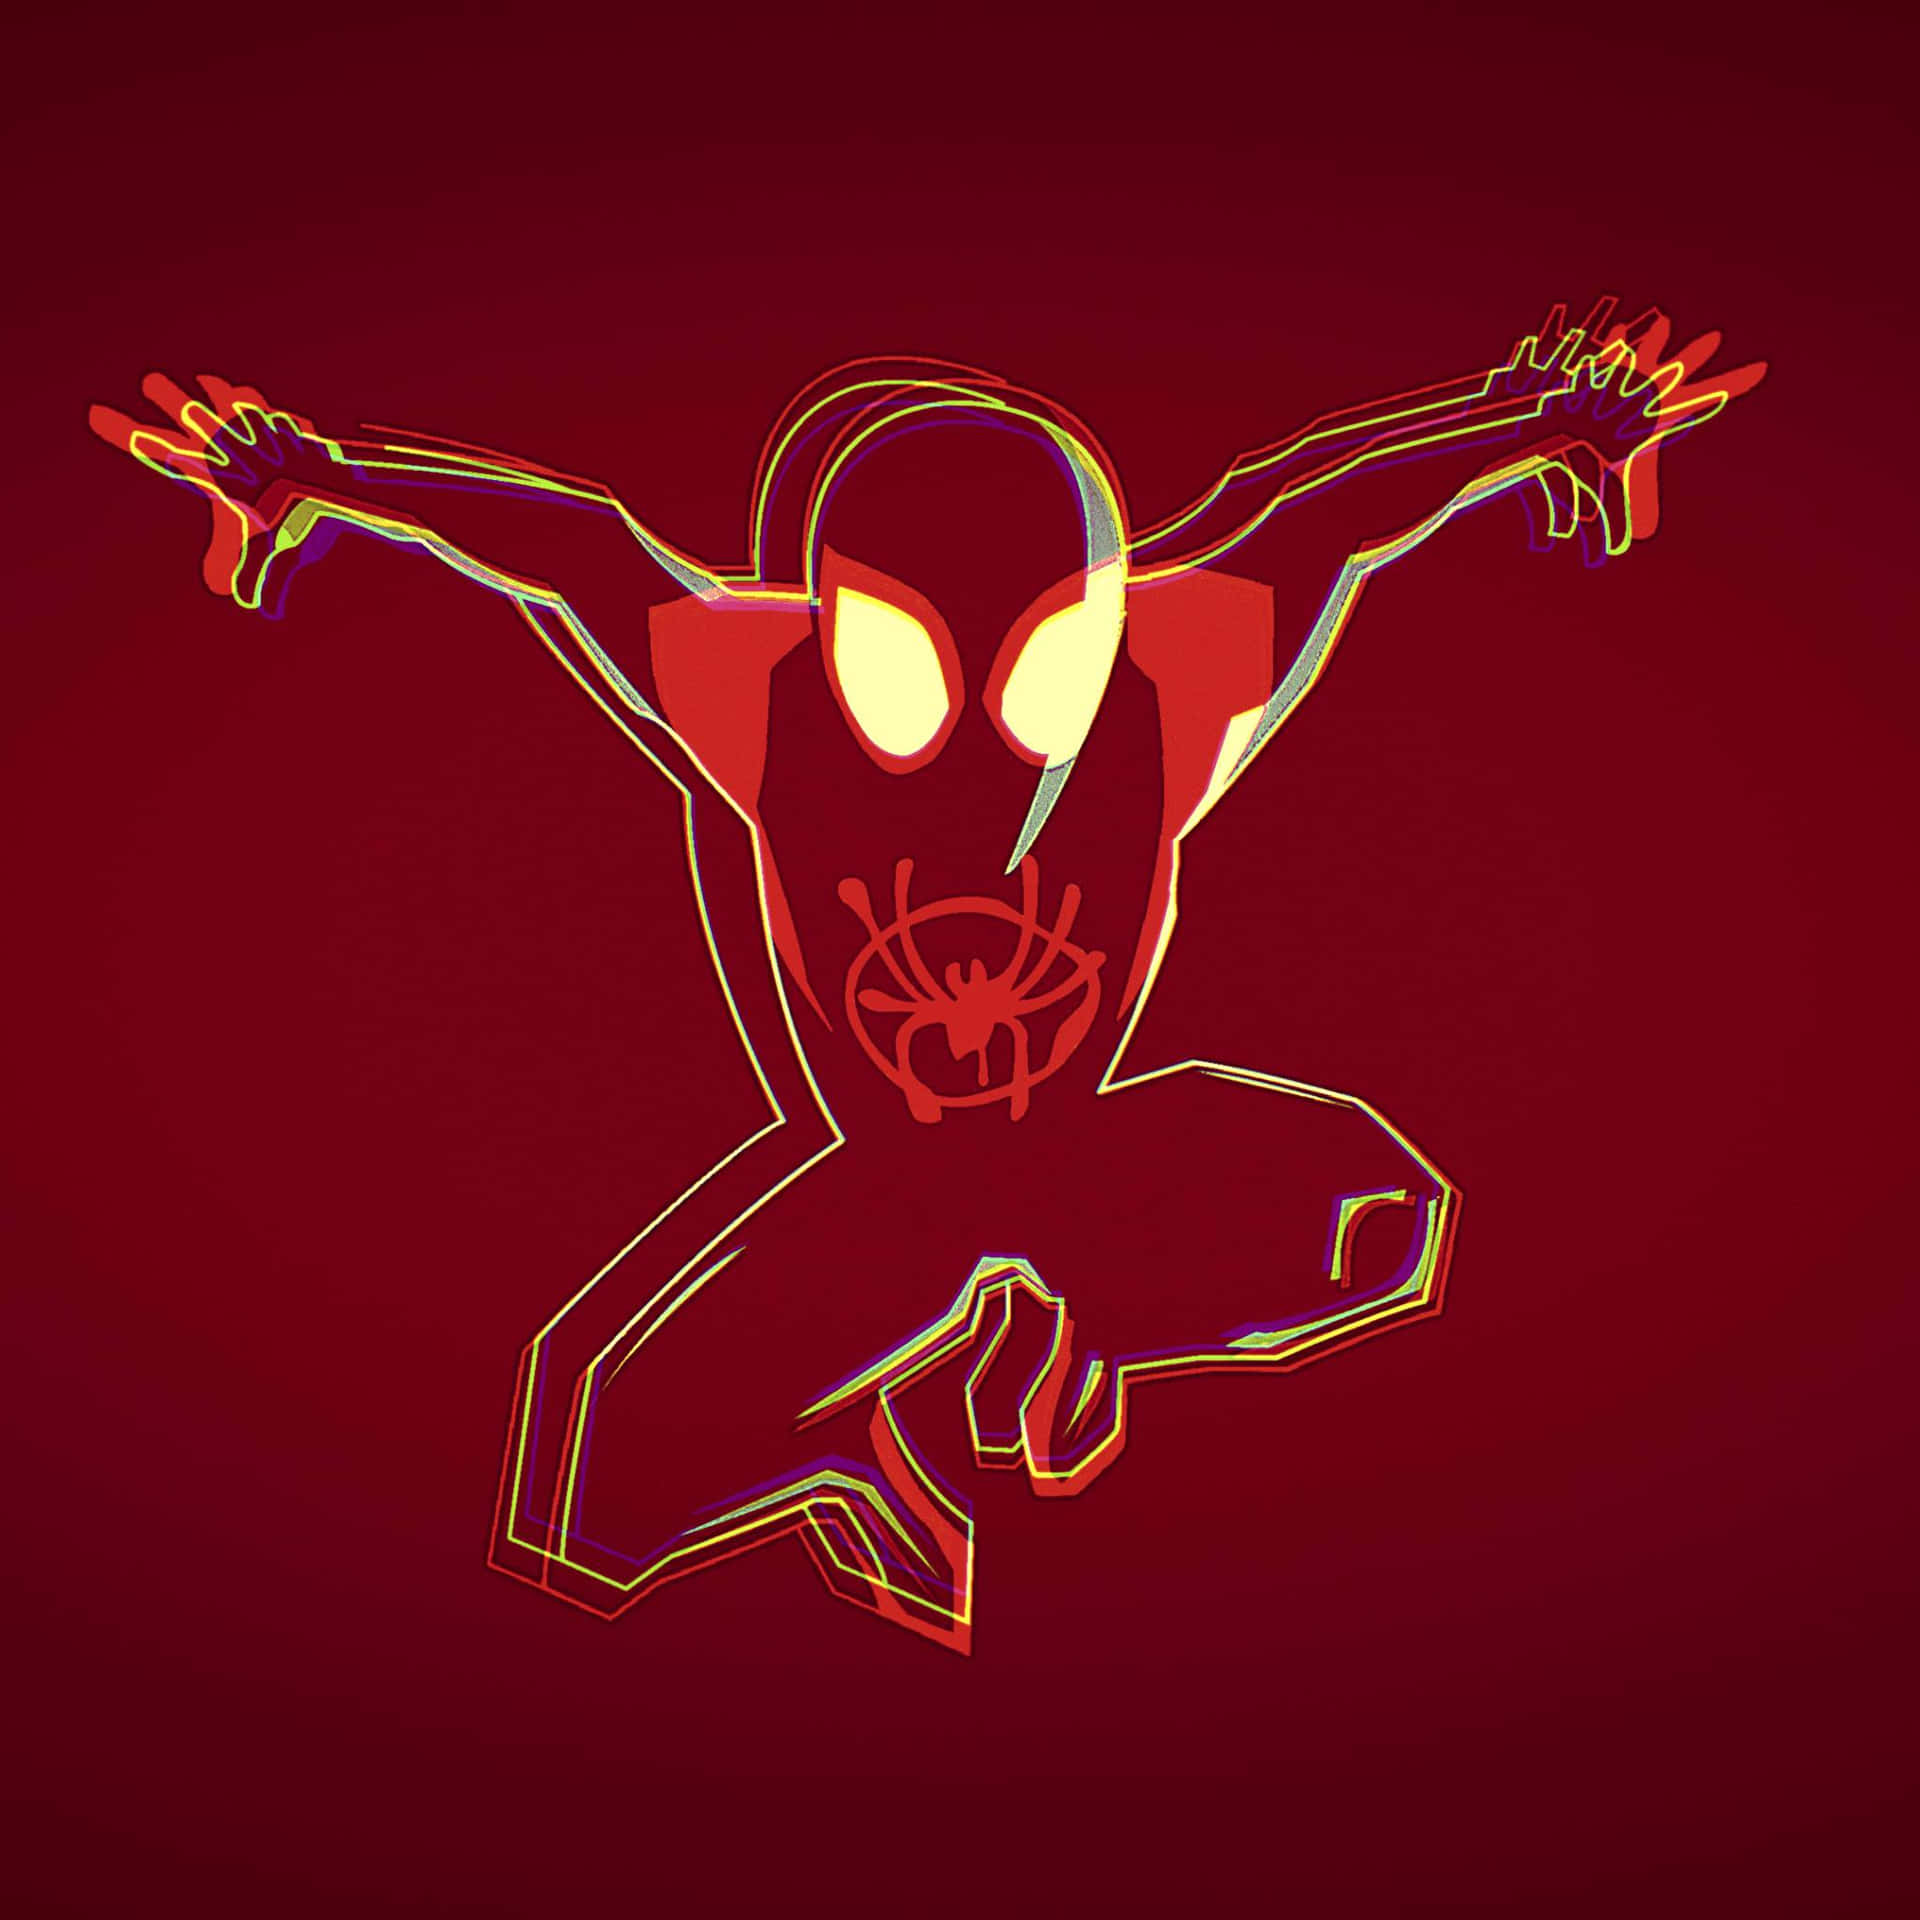 Últimohéroe Únete A Spider Man En Una Aventura Llena De Acción En 4k En El Universo De Spider Verse. Fondo de pantalla